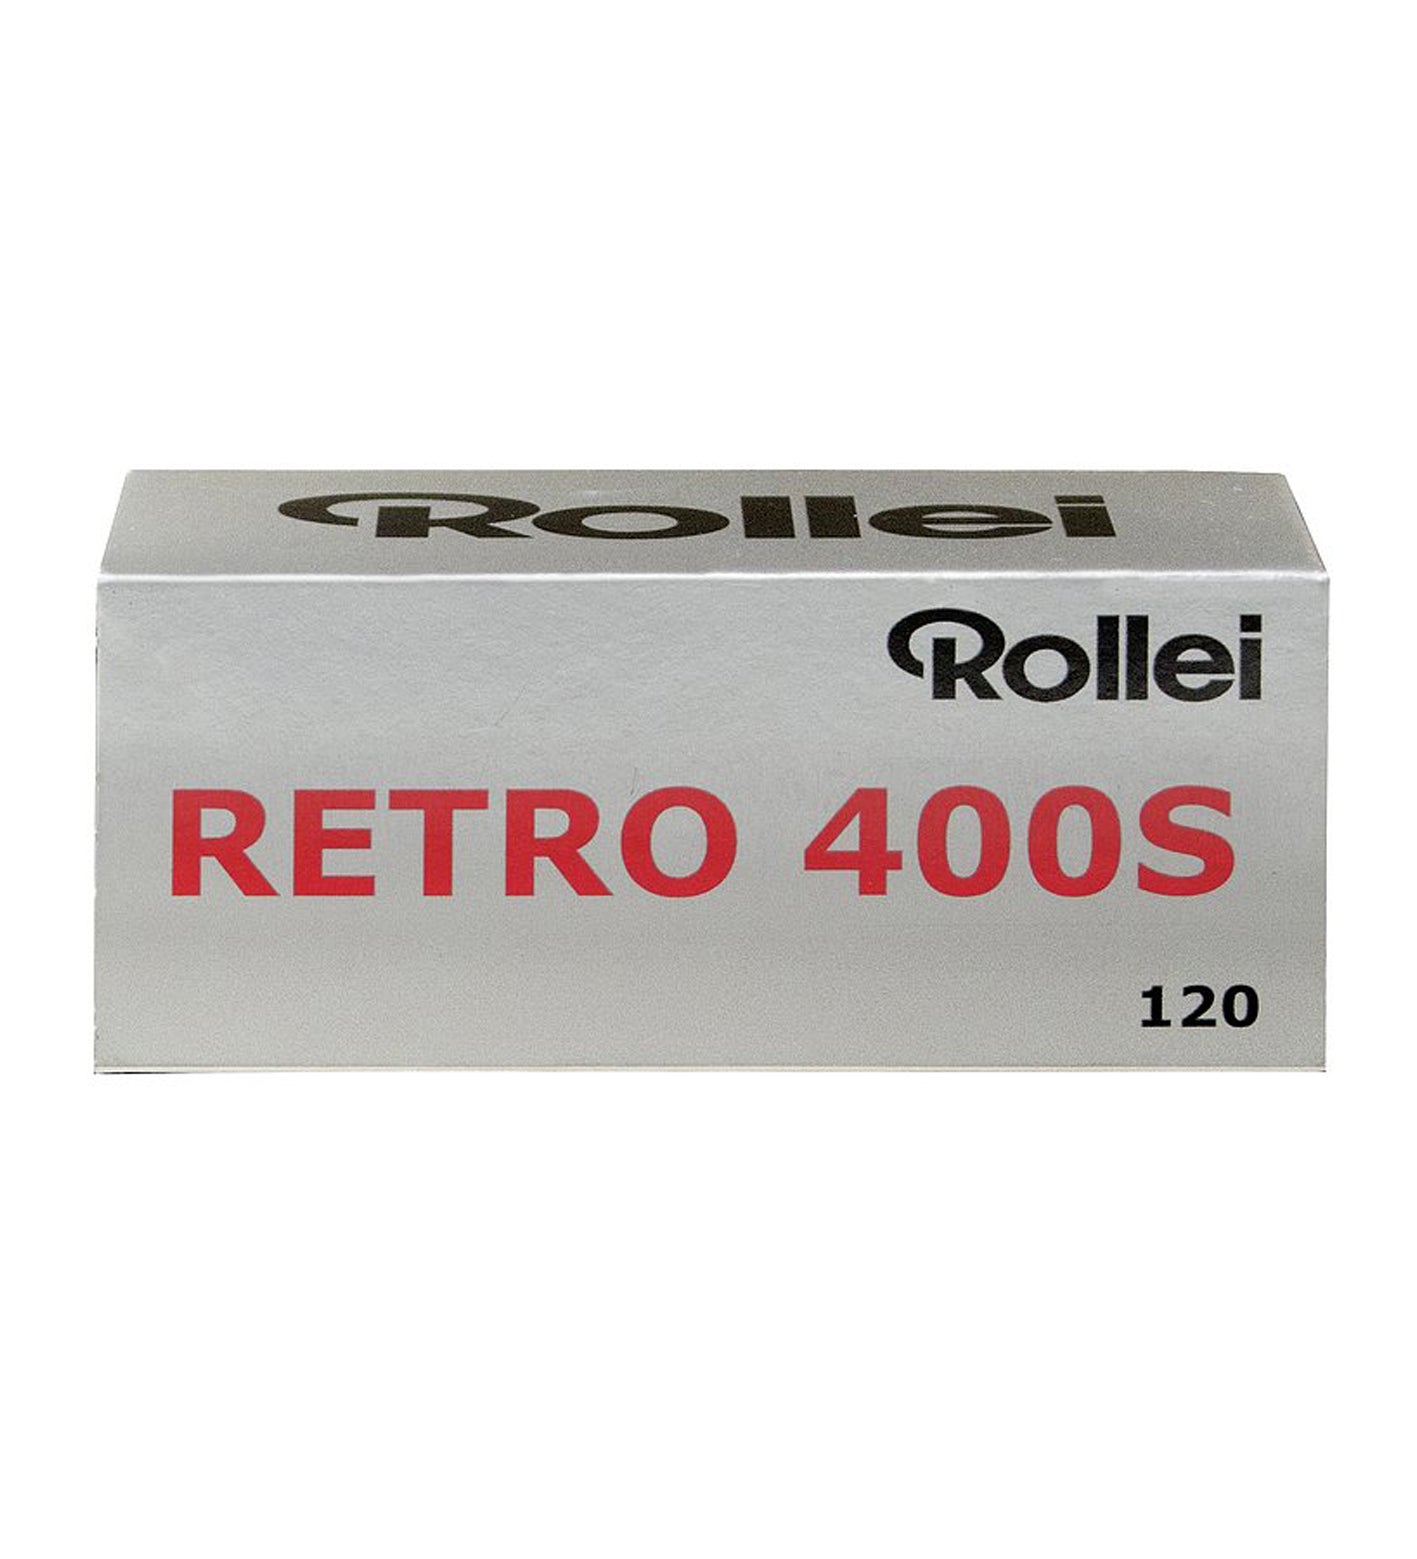 Rollei Retro 400 S 120 Film (£7.50 incl VAT)